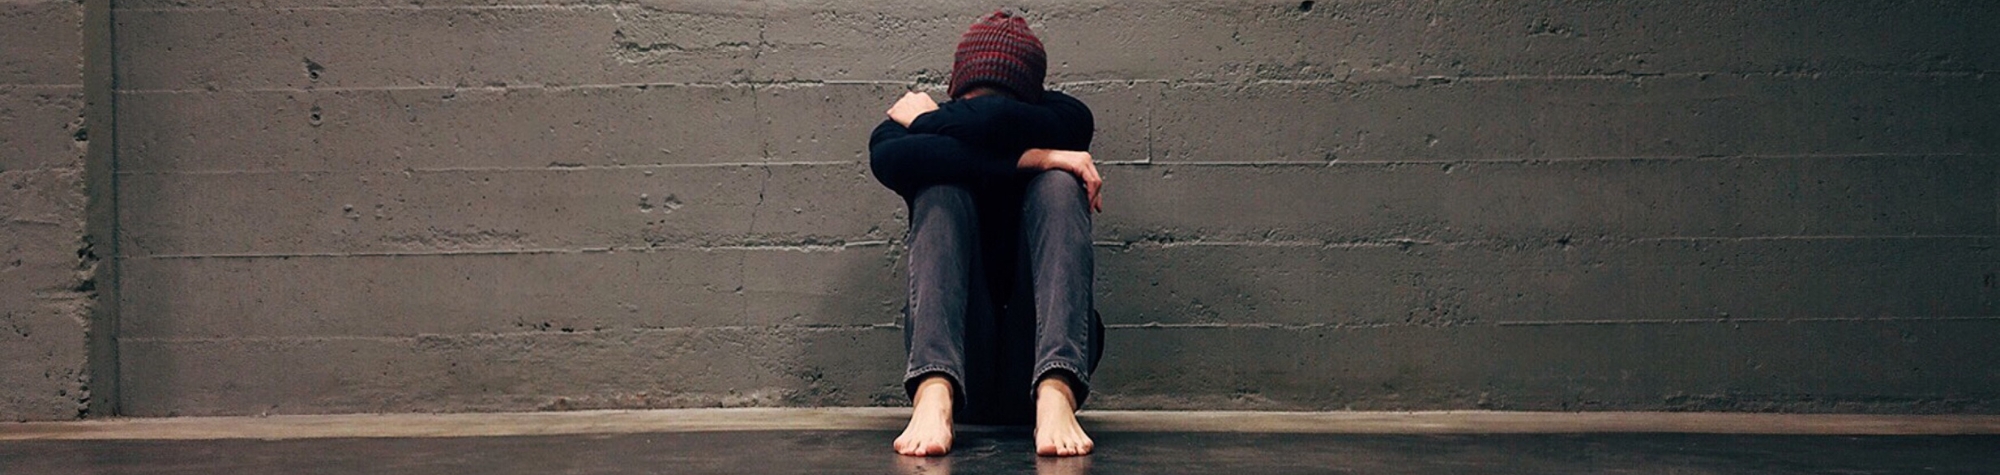 Consecuencias del acoso escolar y su relación con  el riesgo de suicidio